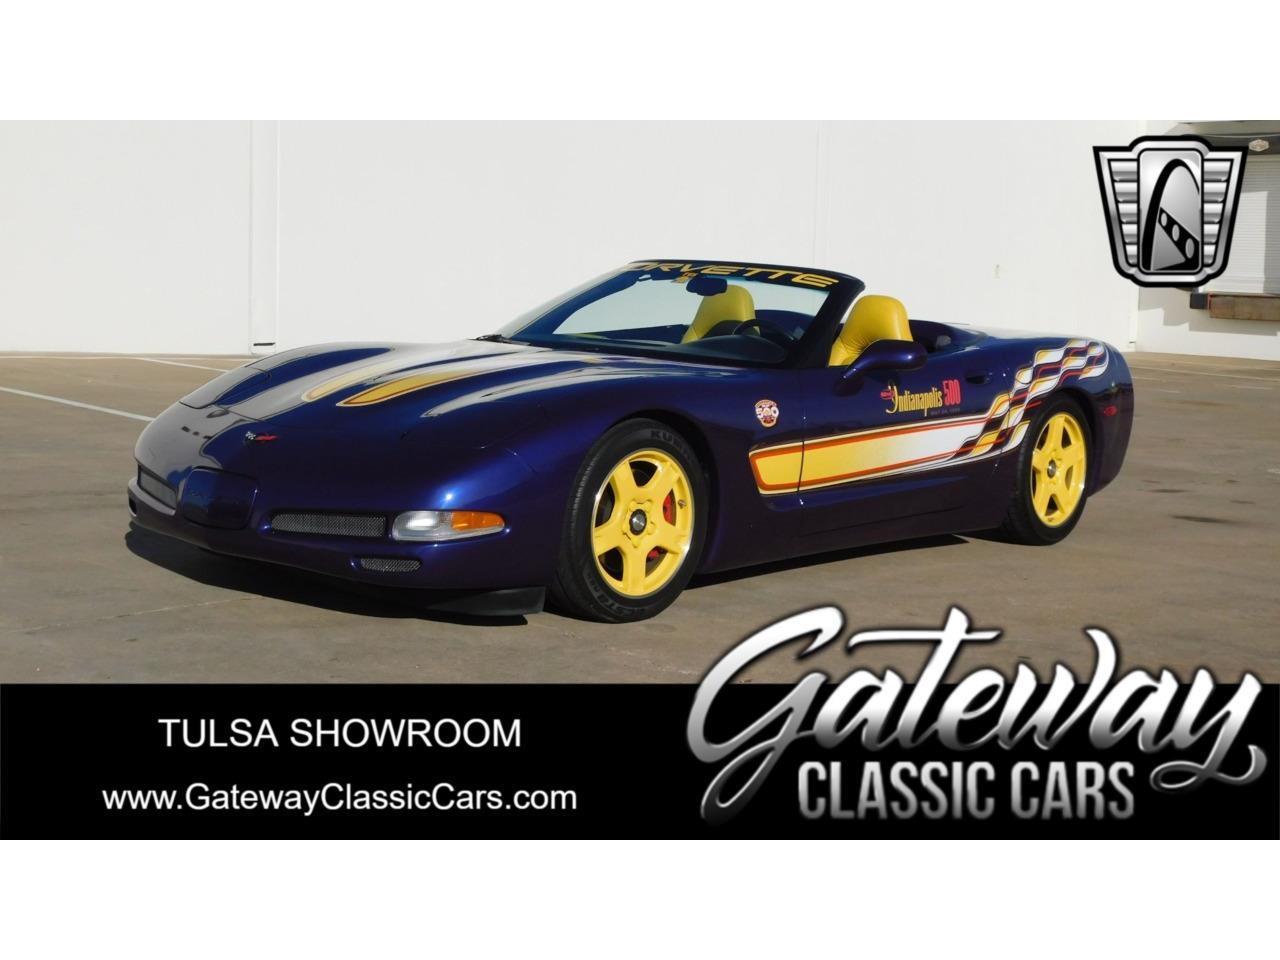 For Sale: 1998 Chevrolet Corvette in O'Fallon, Illinois for sale in O Fallon, IL